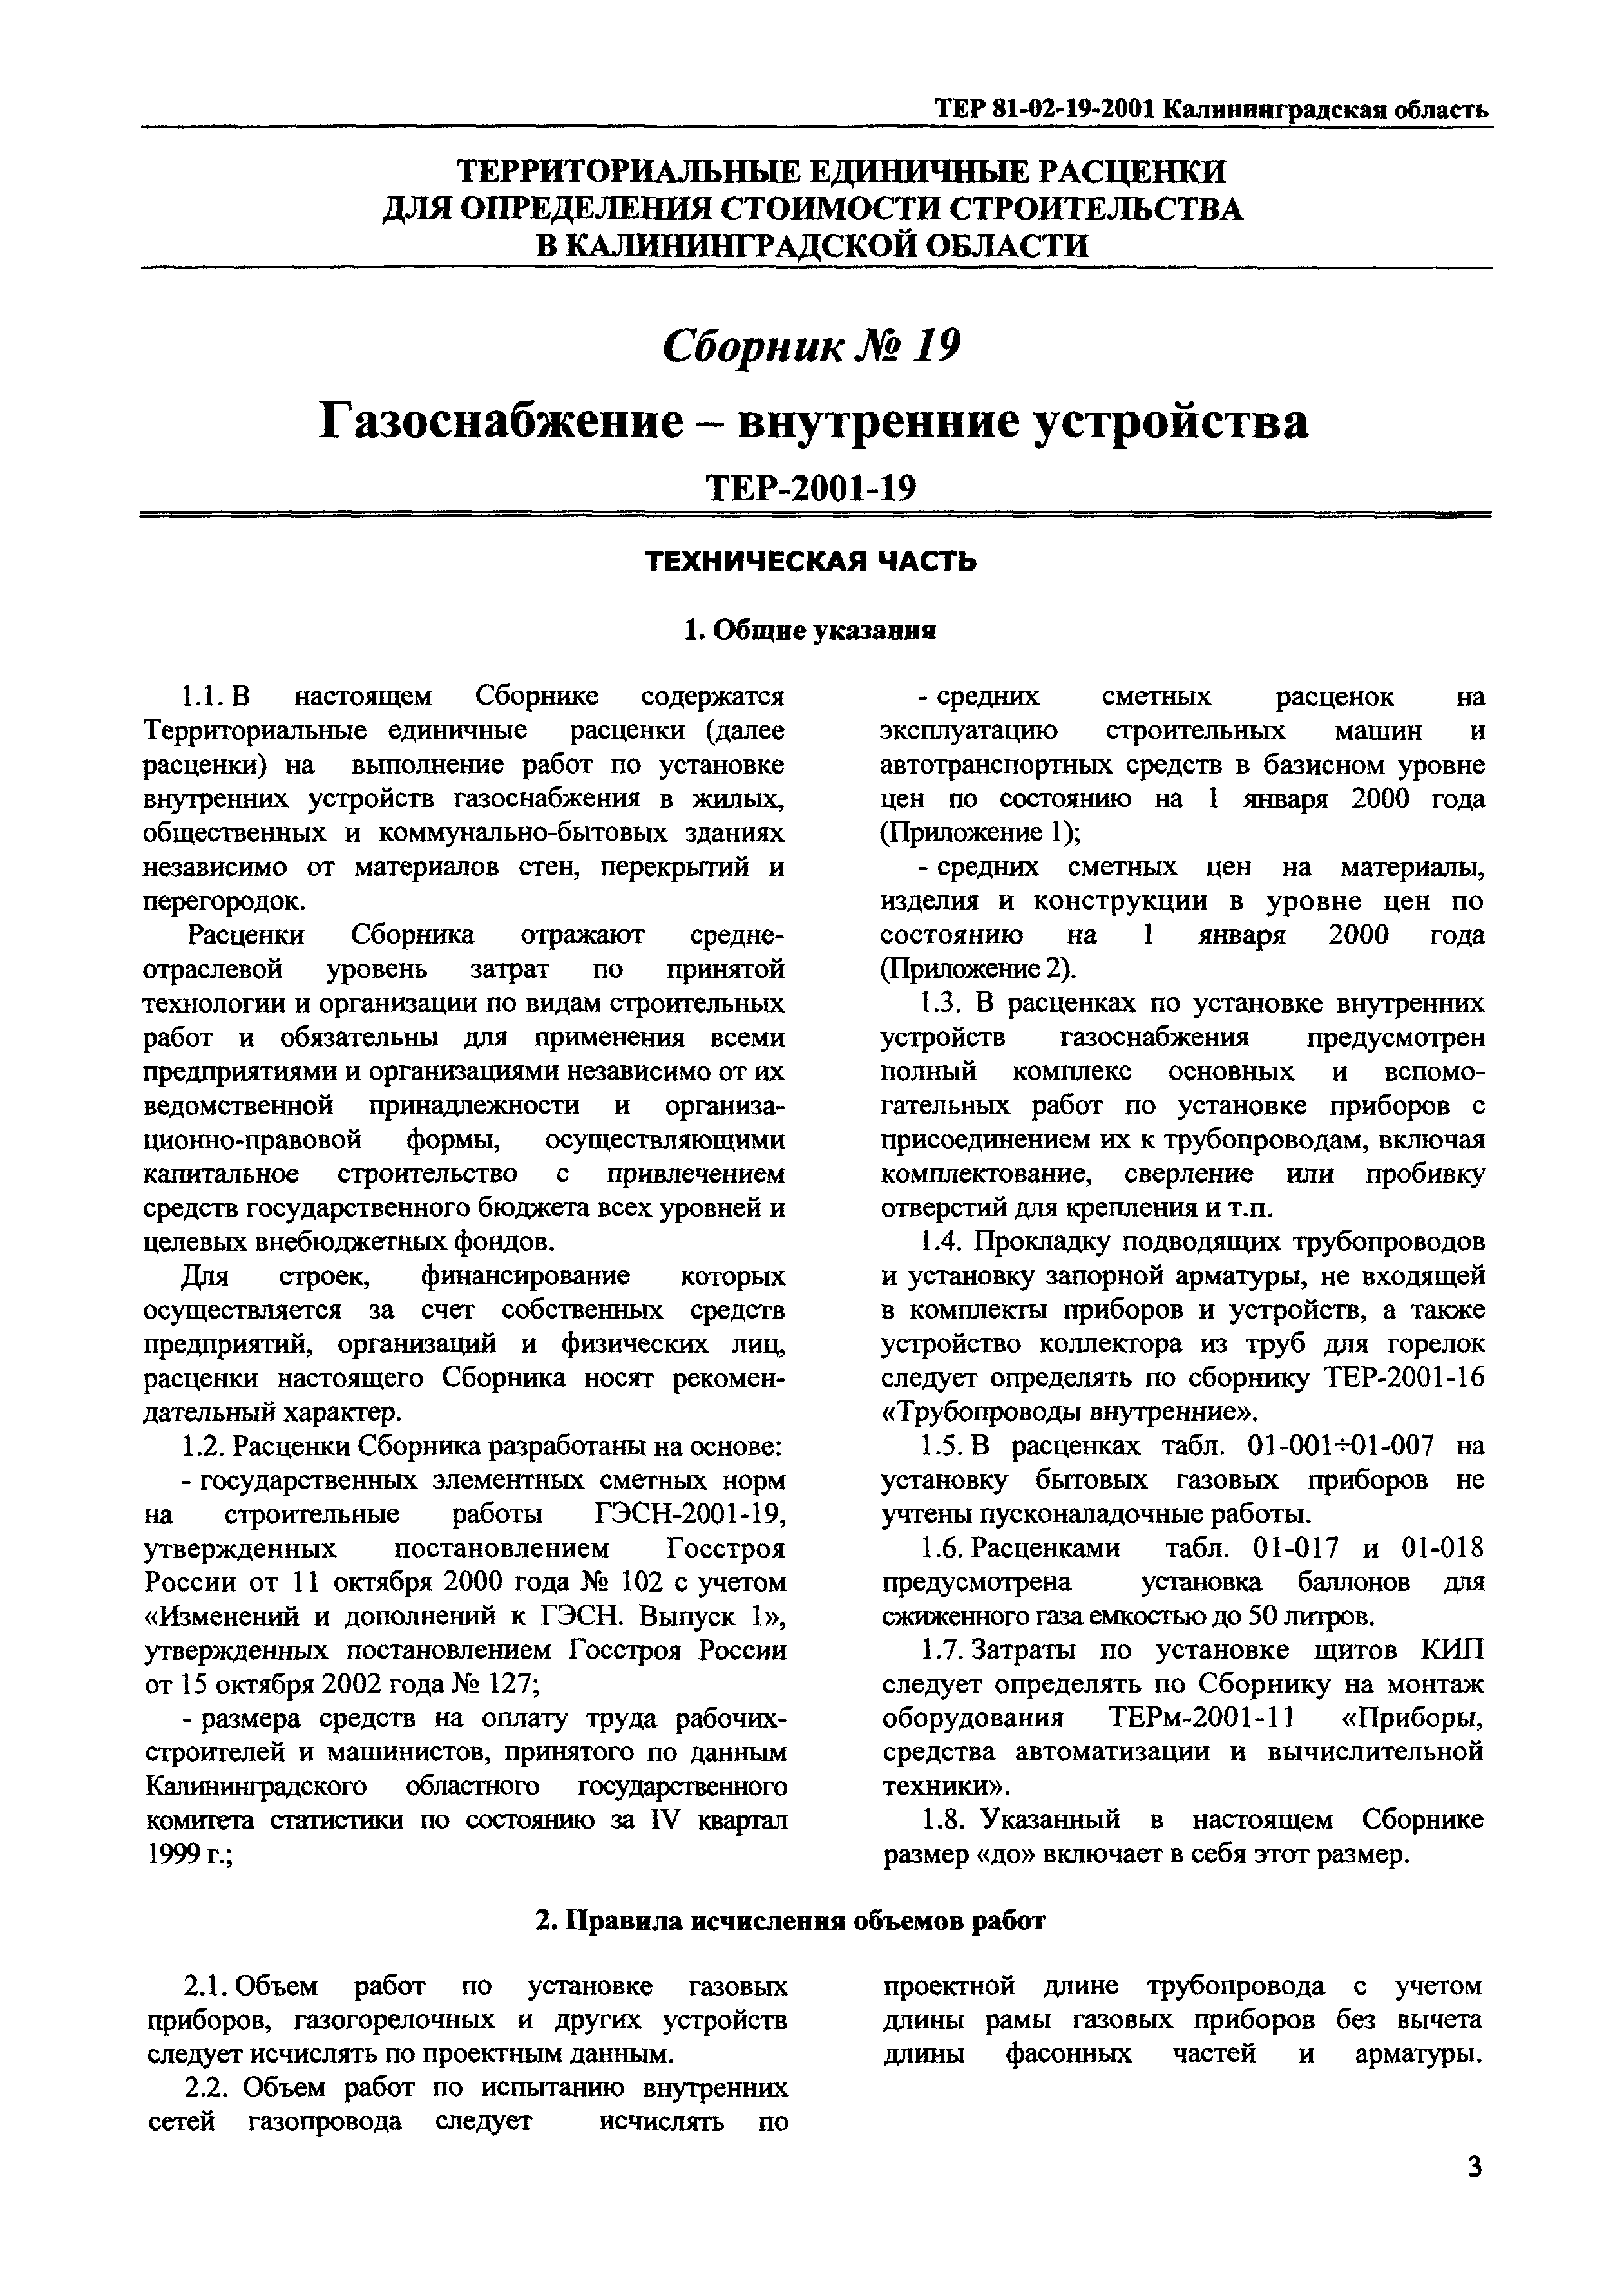 ТЕР Калининградской области 2001-19